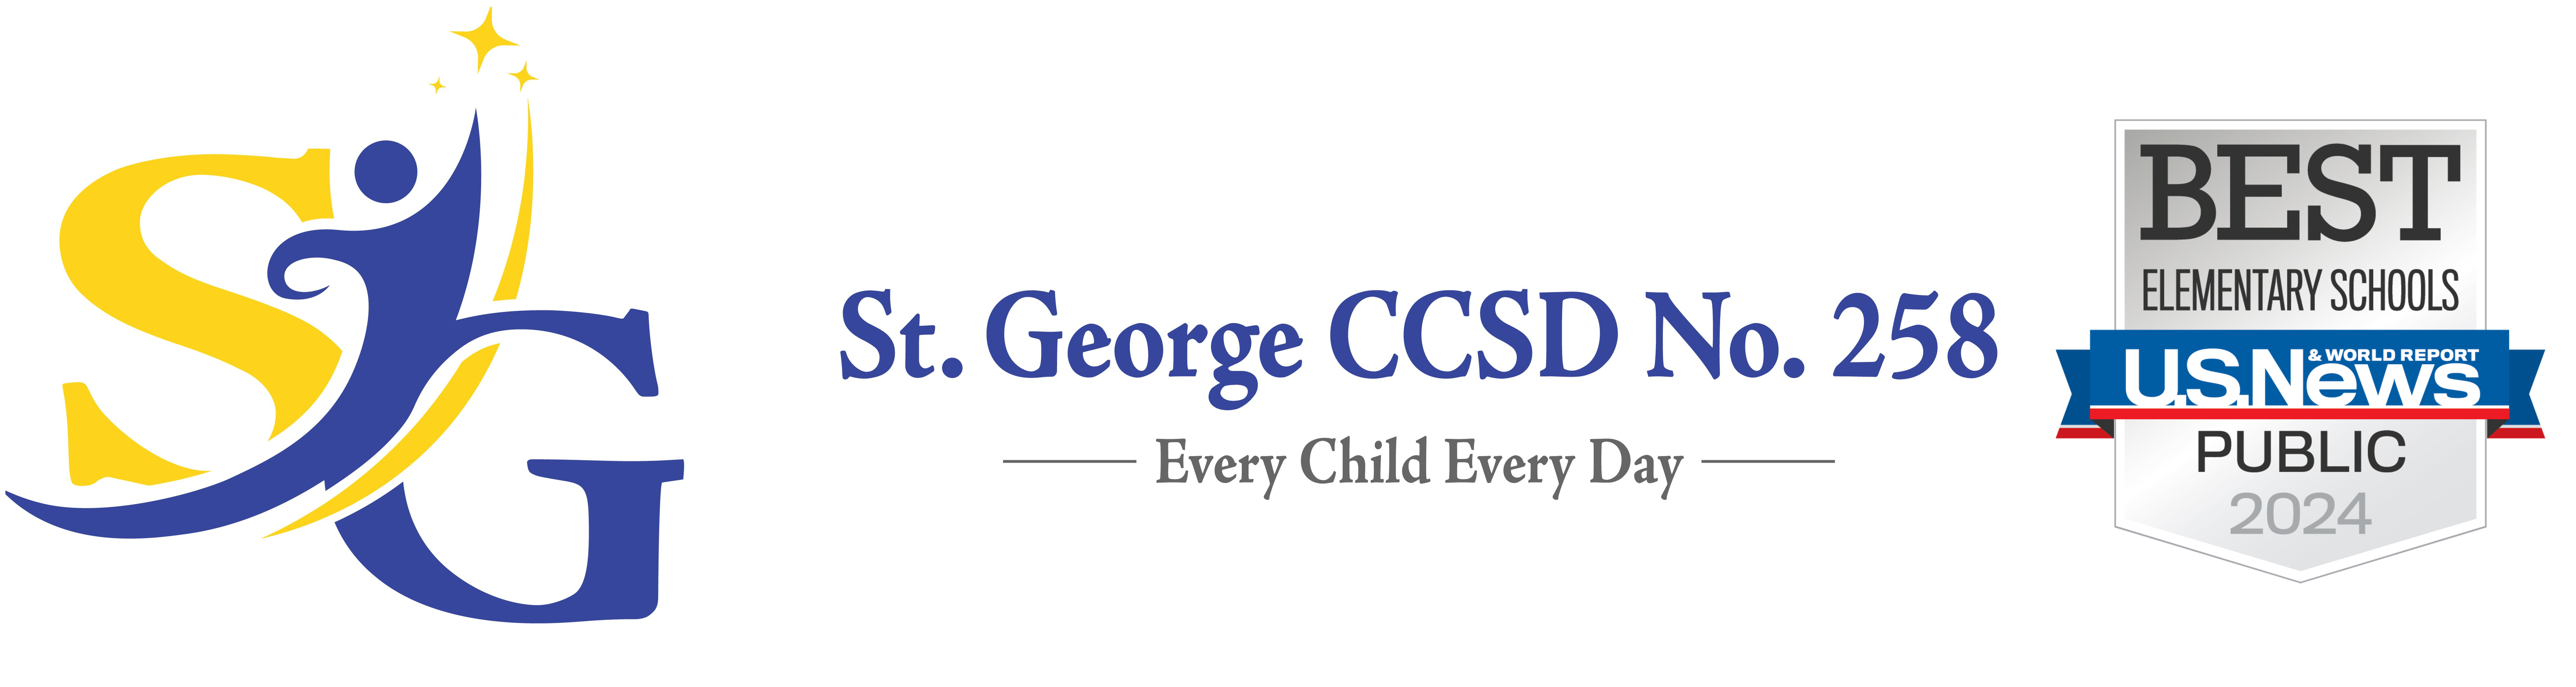 St. George CCSD258